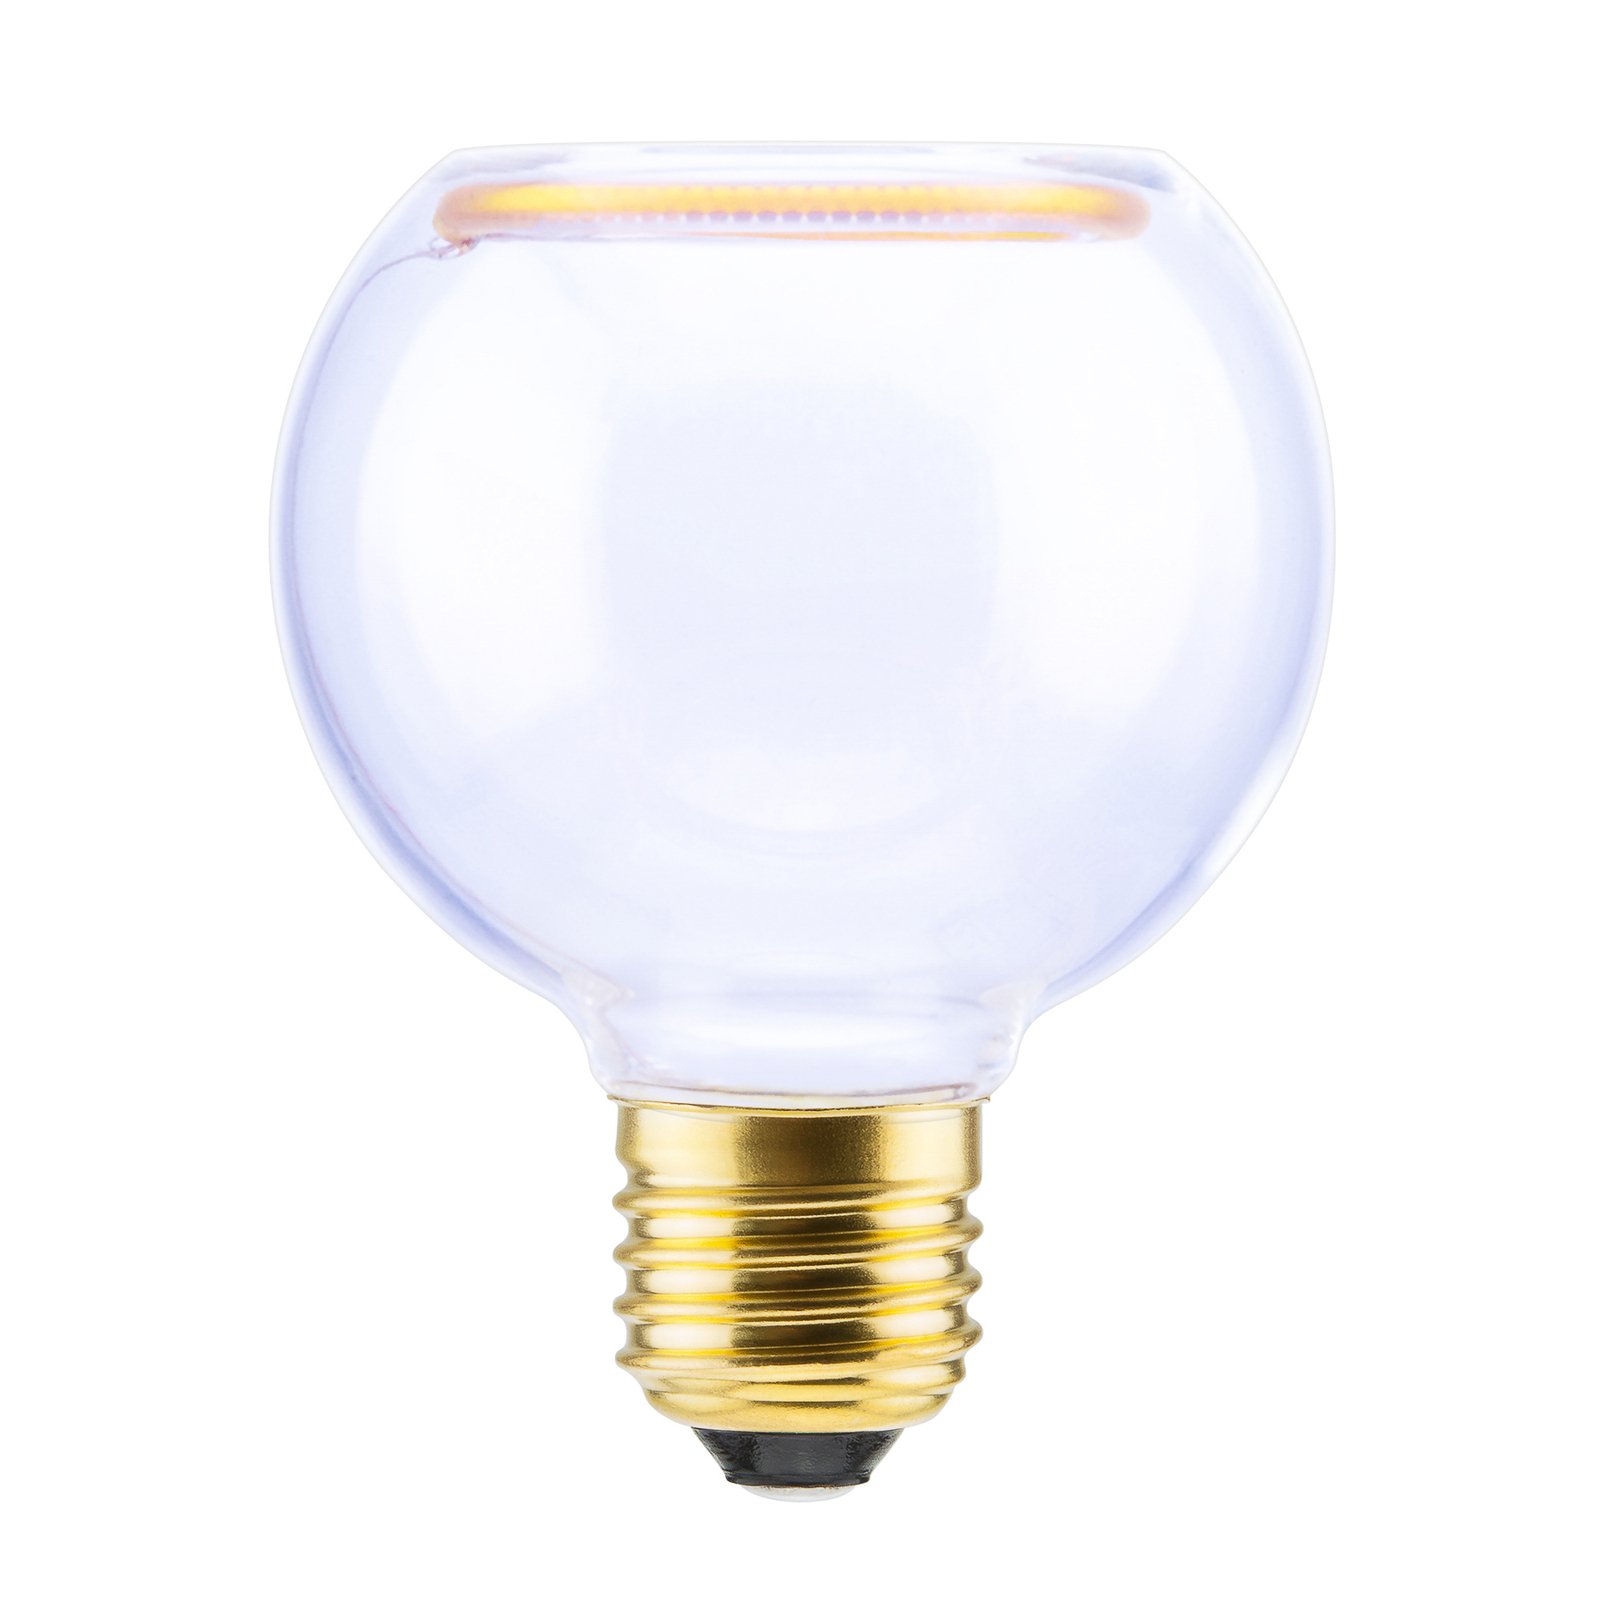 SEGULA floating globe LED bulb G80 E27 4 W clear